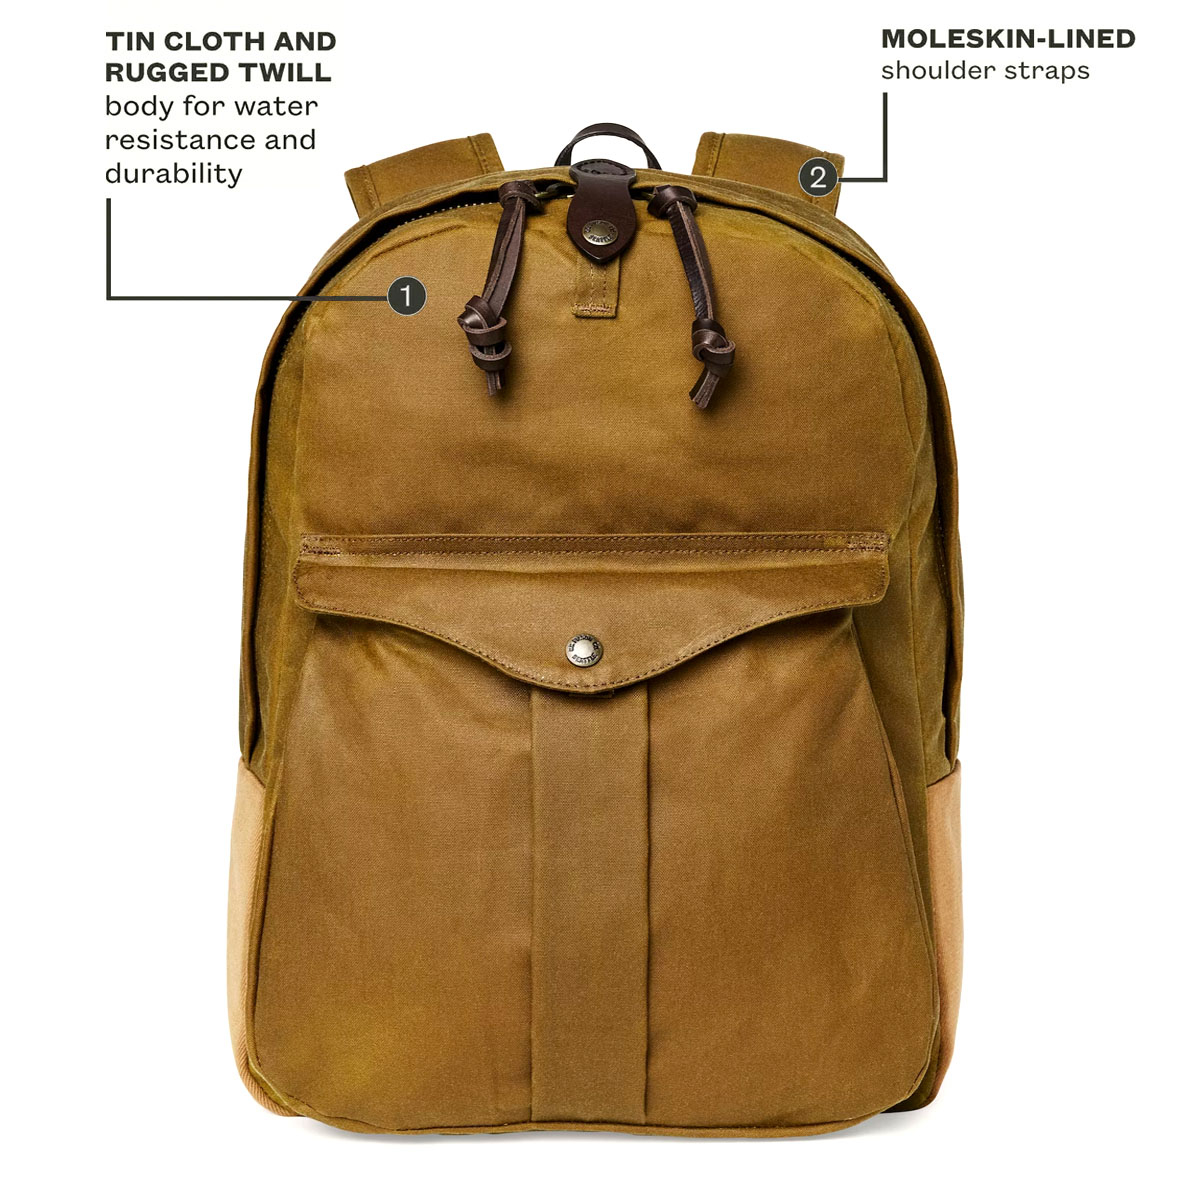 Filson Journeyman Backpack Tan, hergestellt aus Tin Cloth und Rugged Twill Canvas für Wasserdichtigkeit und Haltbarkeit